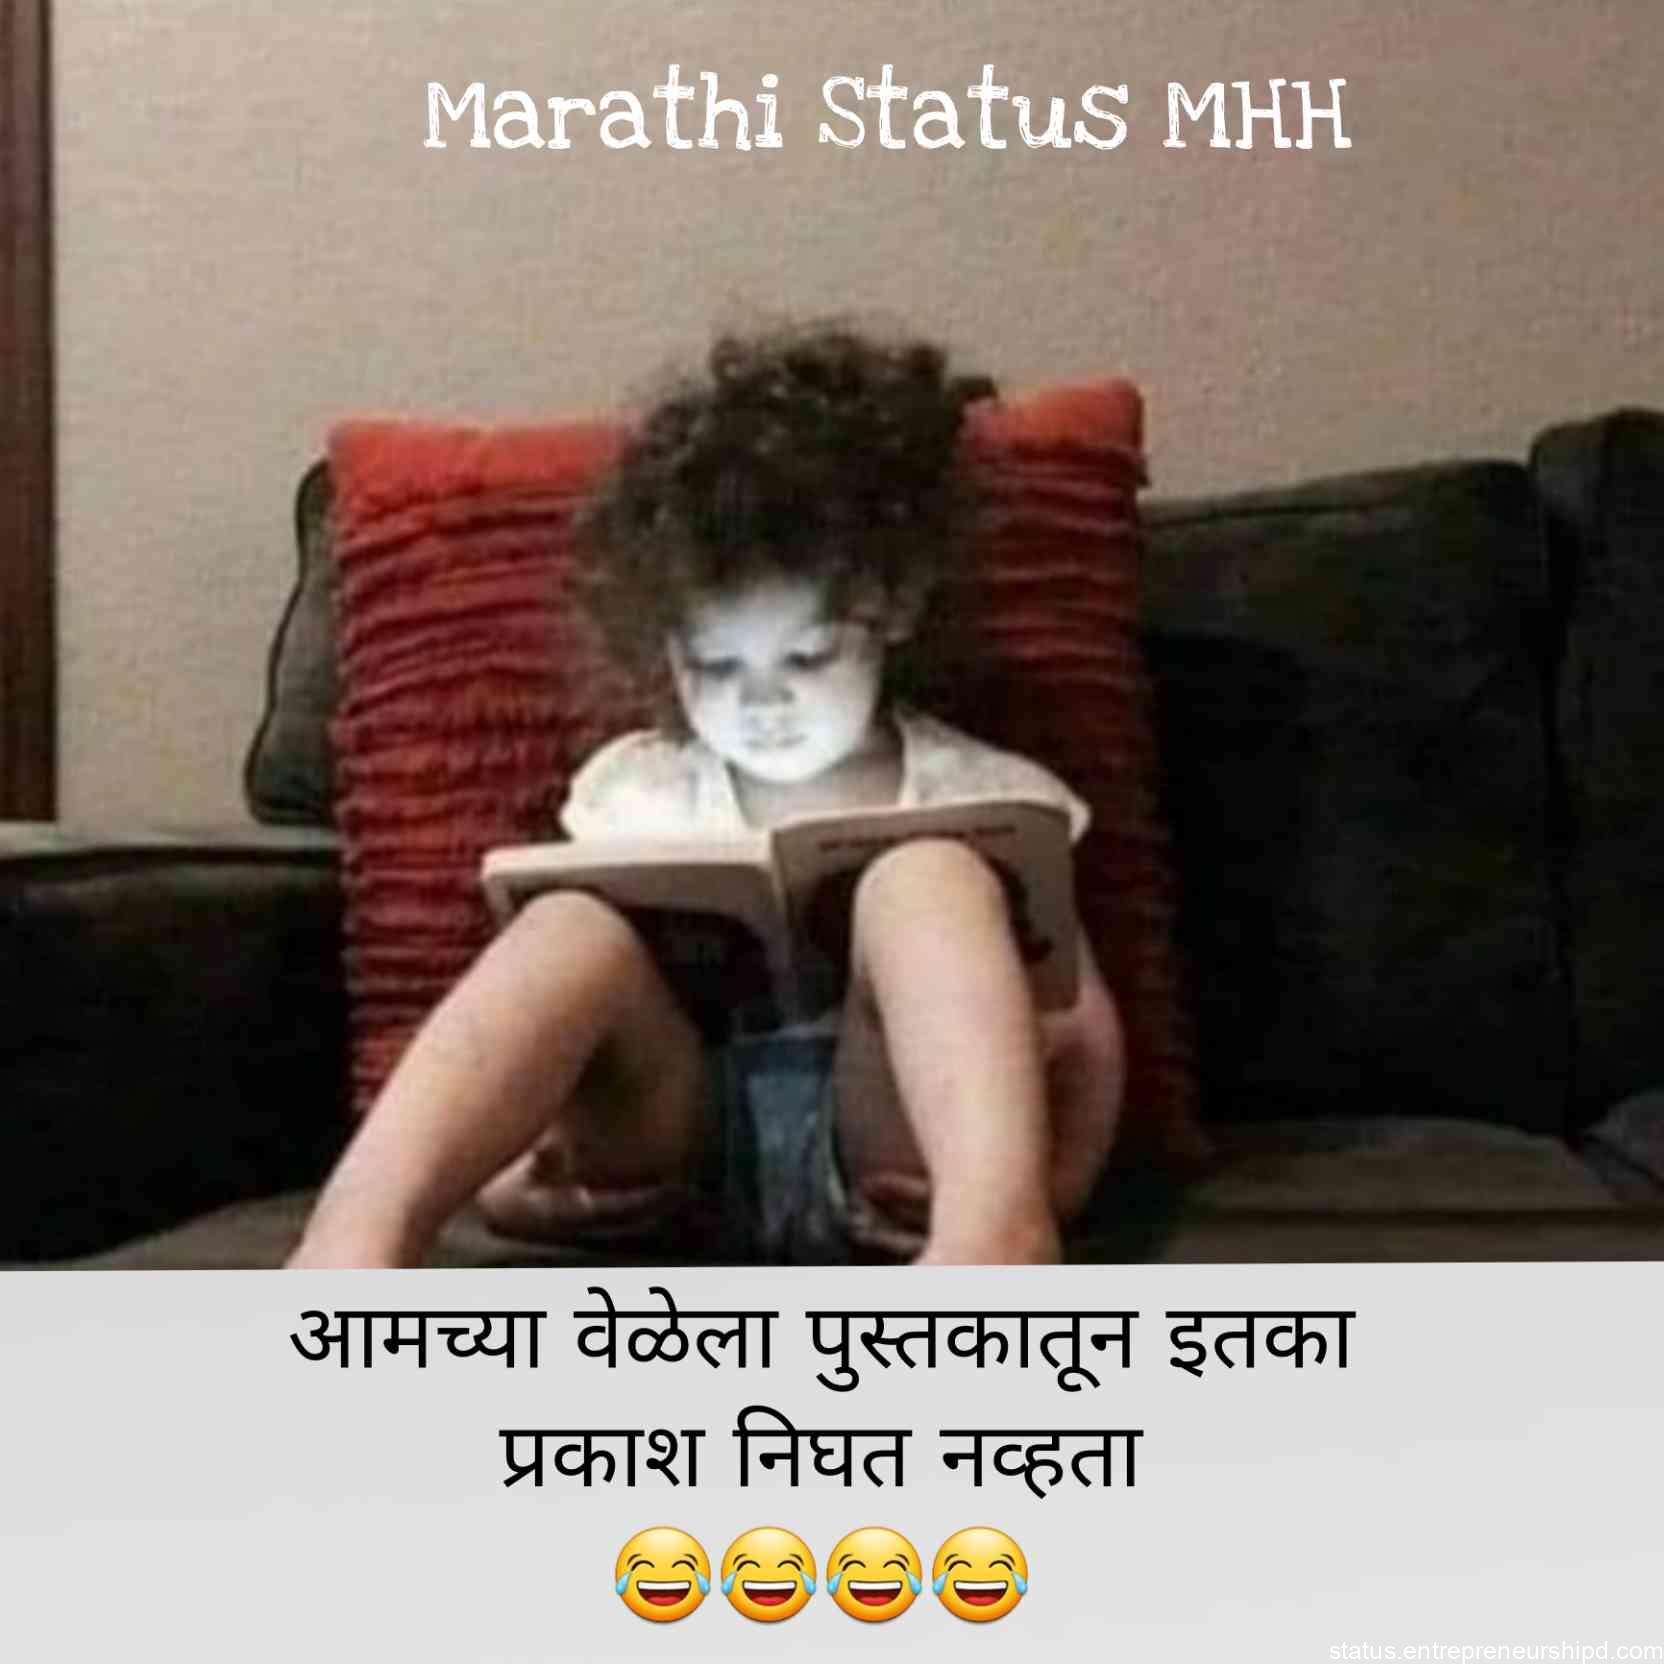 Marathi memes on study students